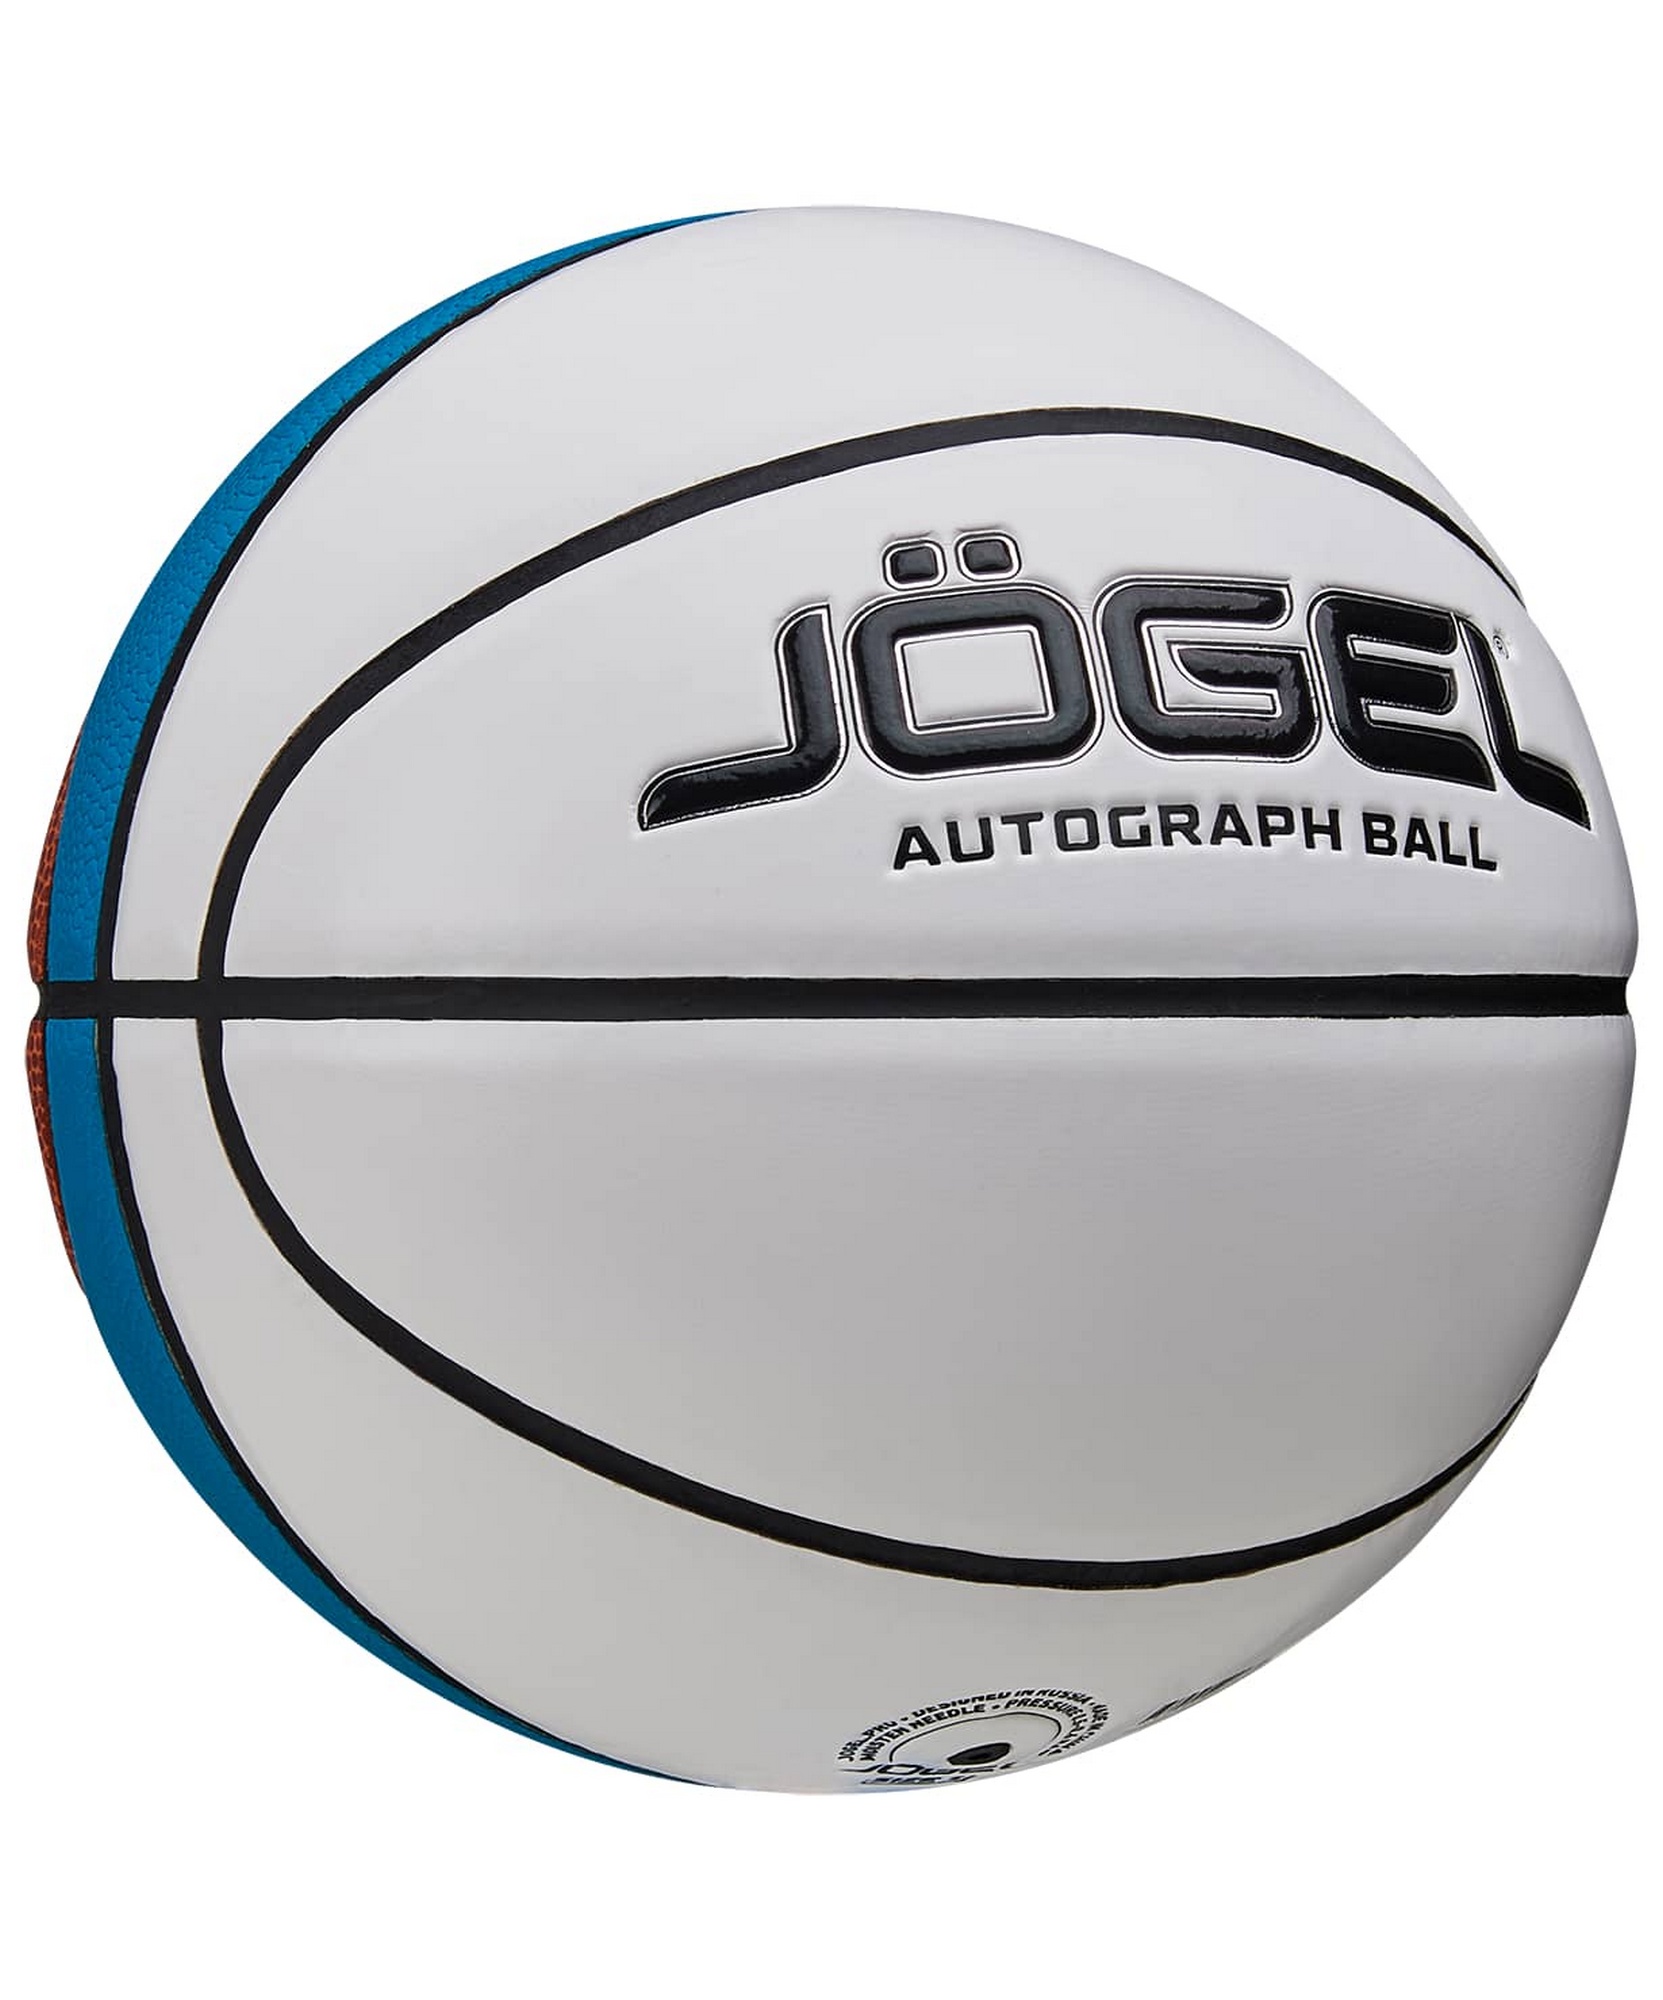 Мяч баскетбольный Jogel ECOBALL 2.0 Autograph р.3 1663_2000